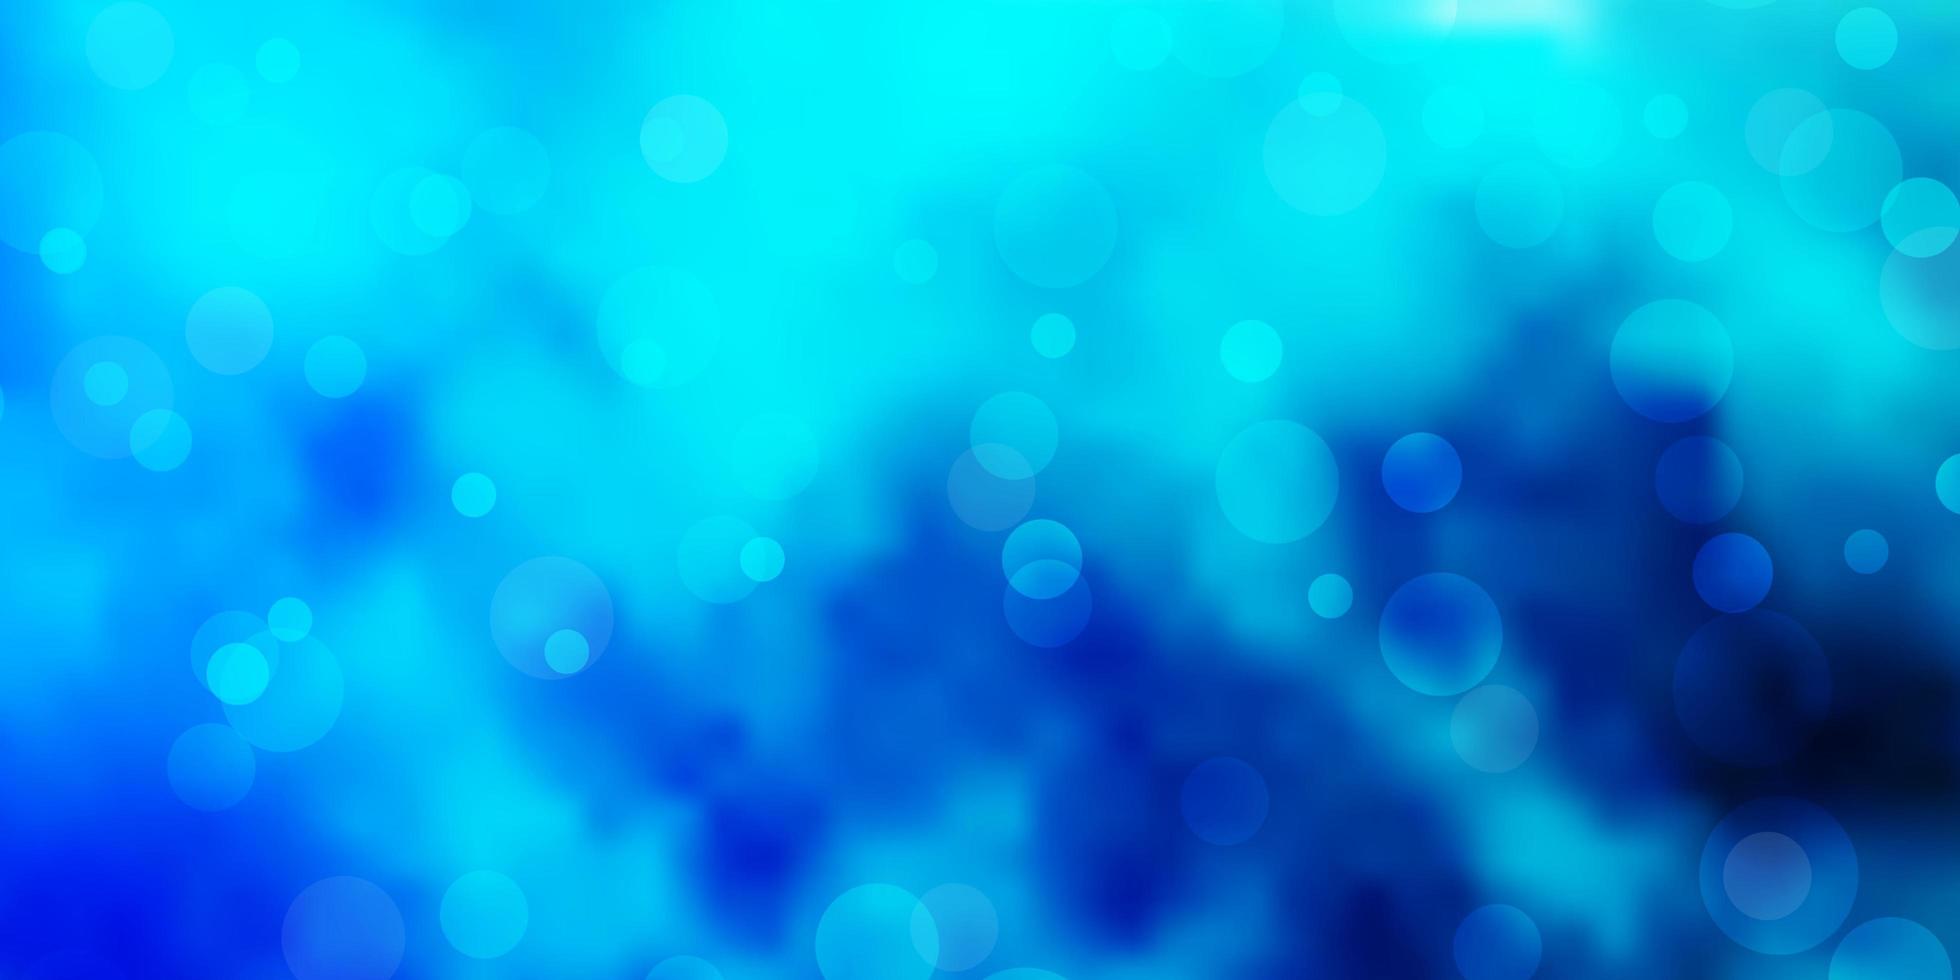 fundo azul claro do vetor com bolhas.